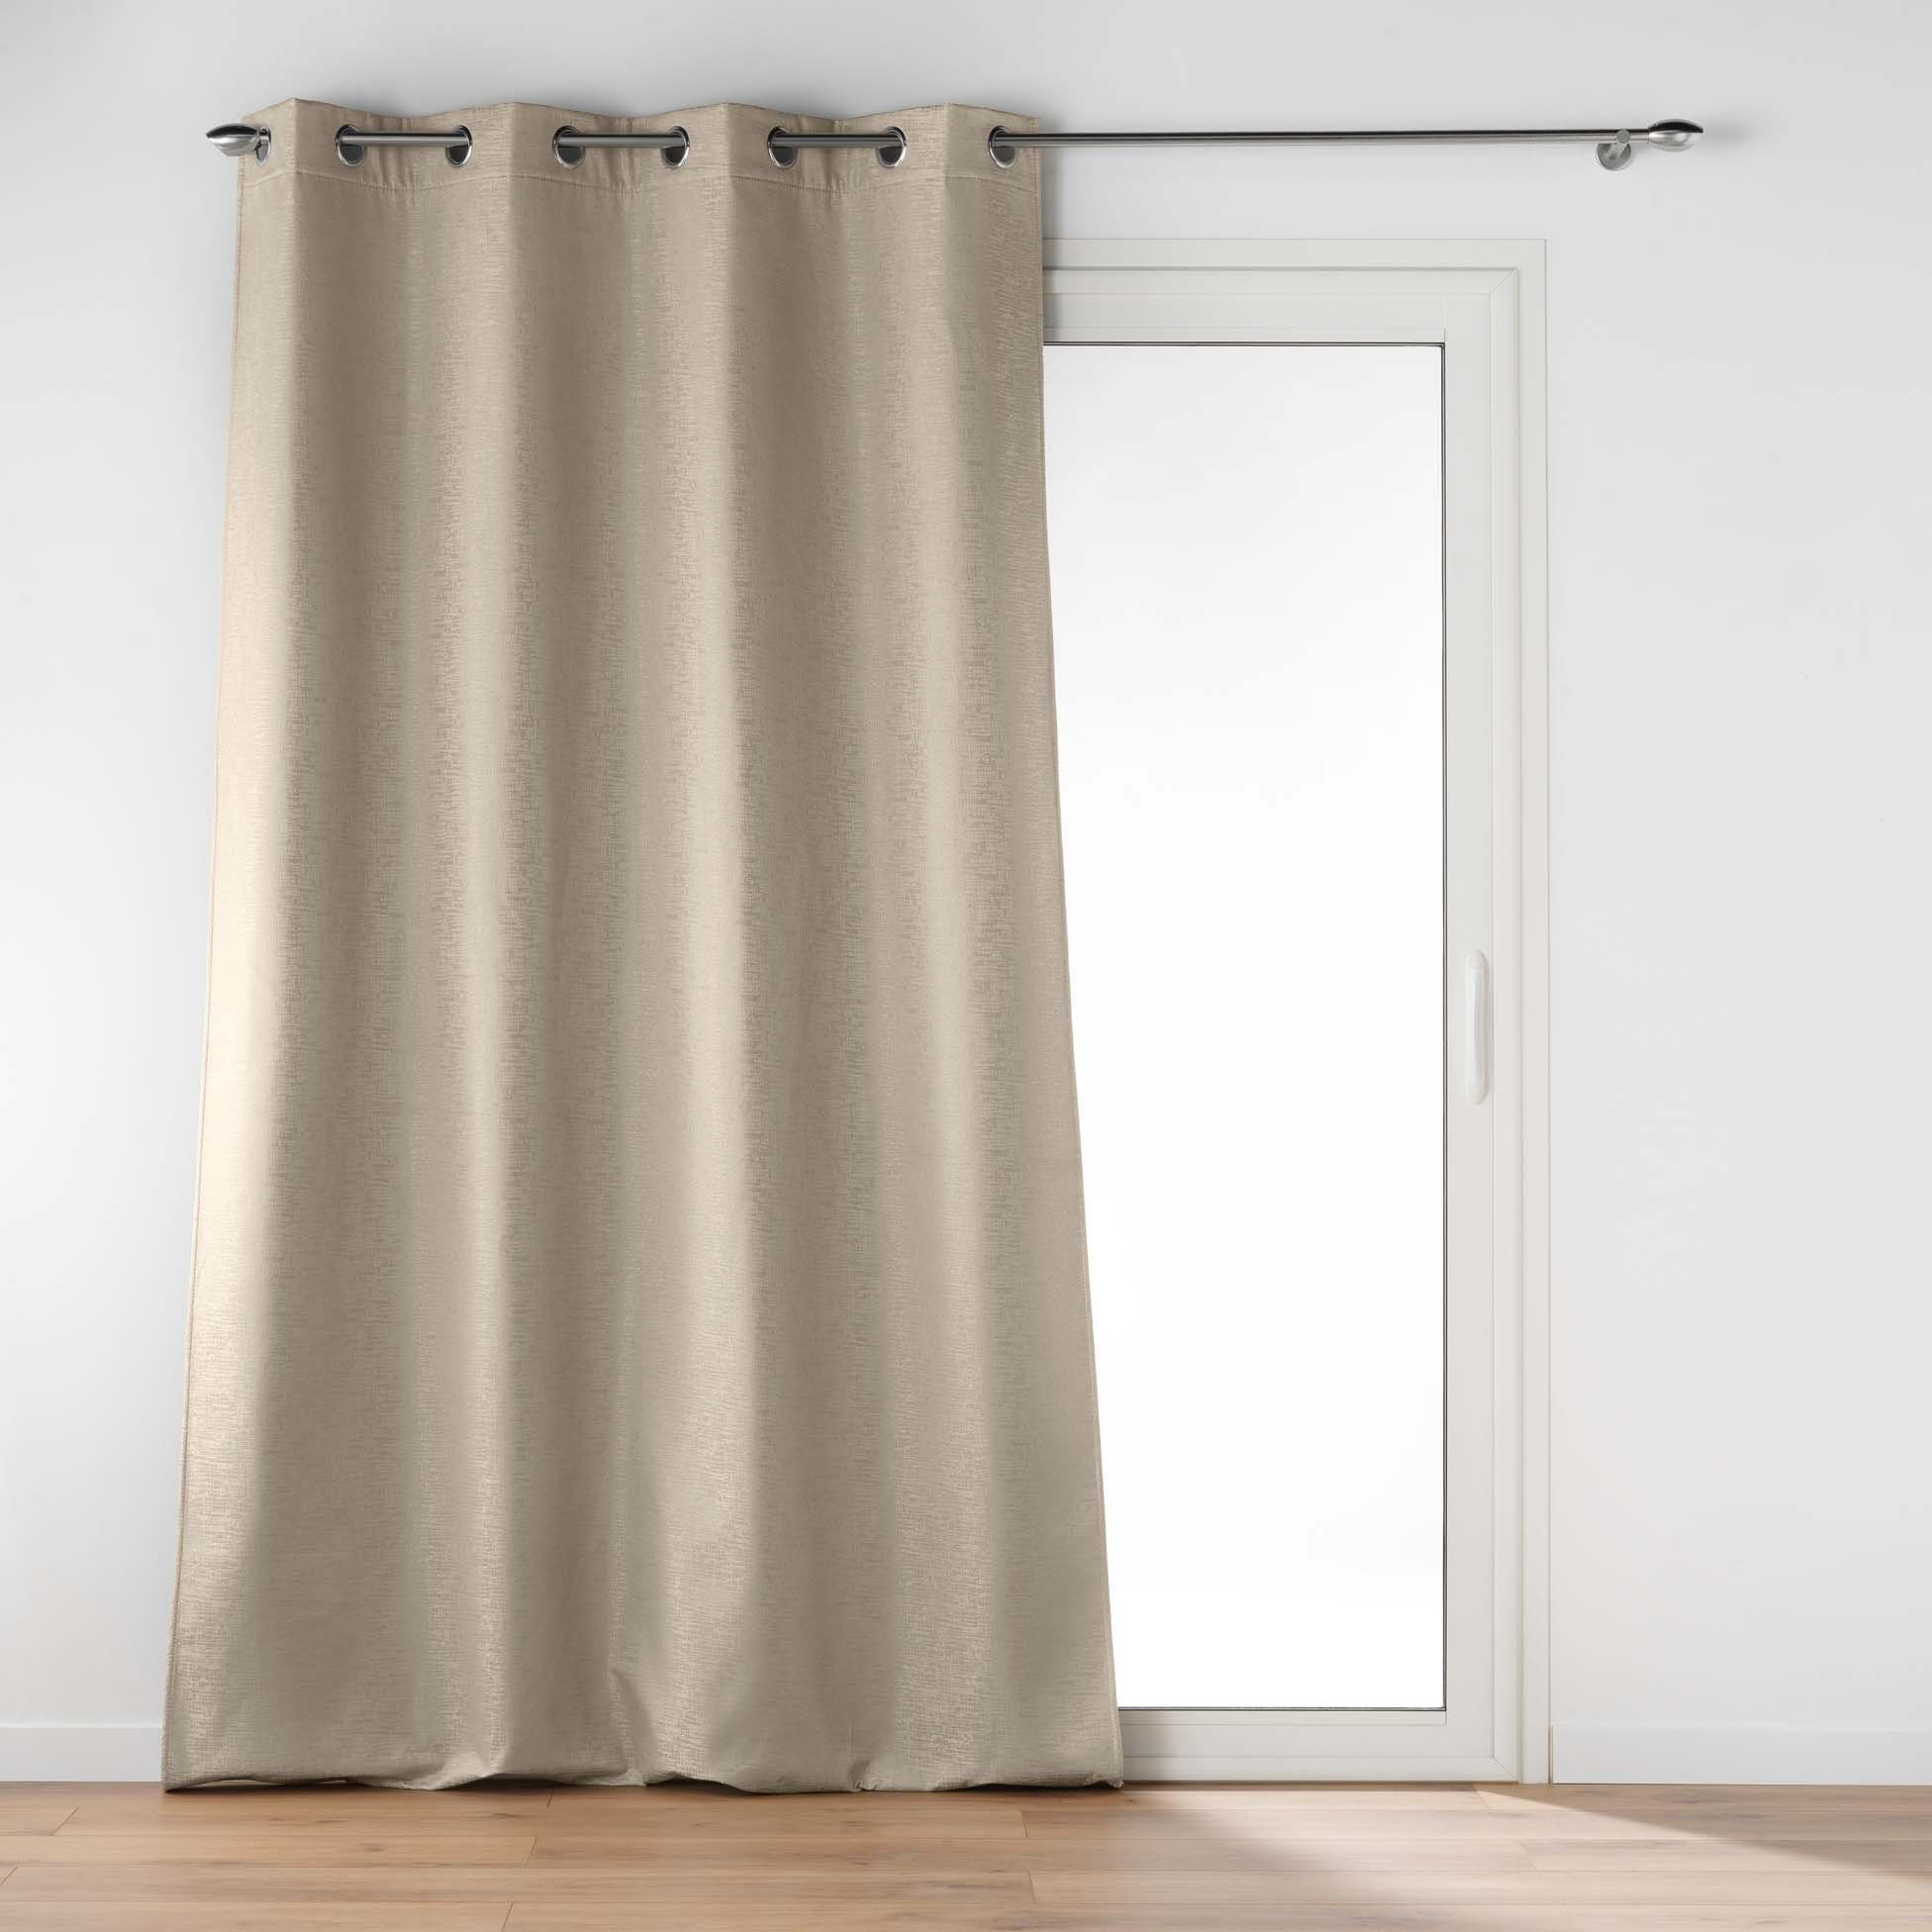 Vorhang, dynamic24, blickdicht Verdunkelung Thermo Schallschutz blickdicht, 140x260cm Ösen, beige Vorhang